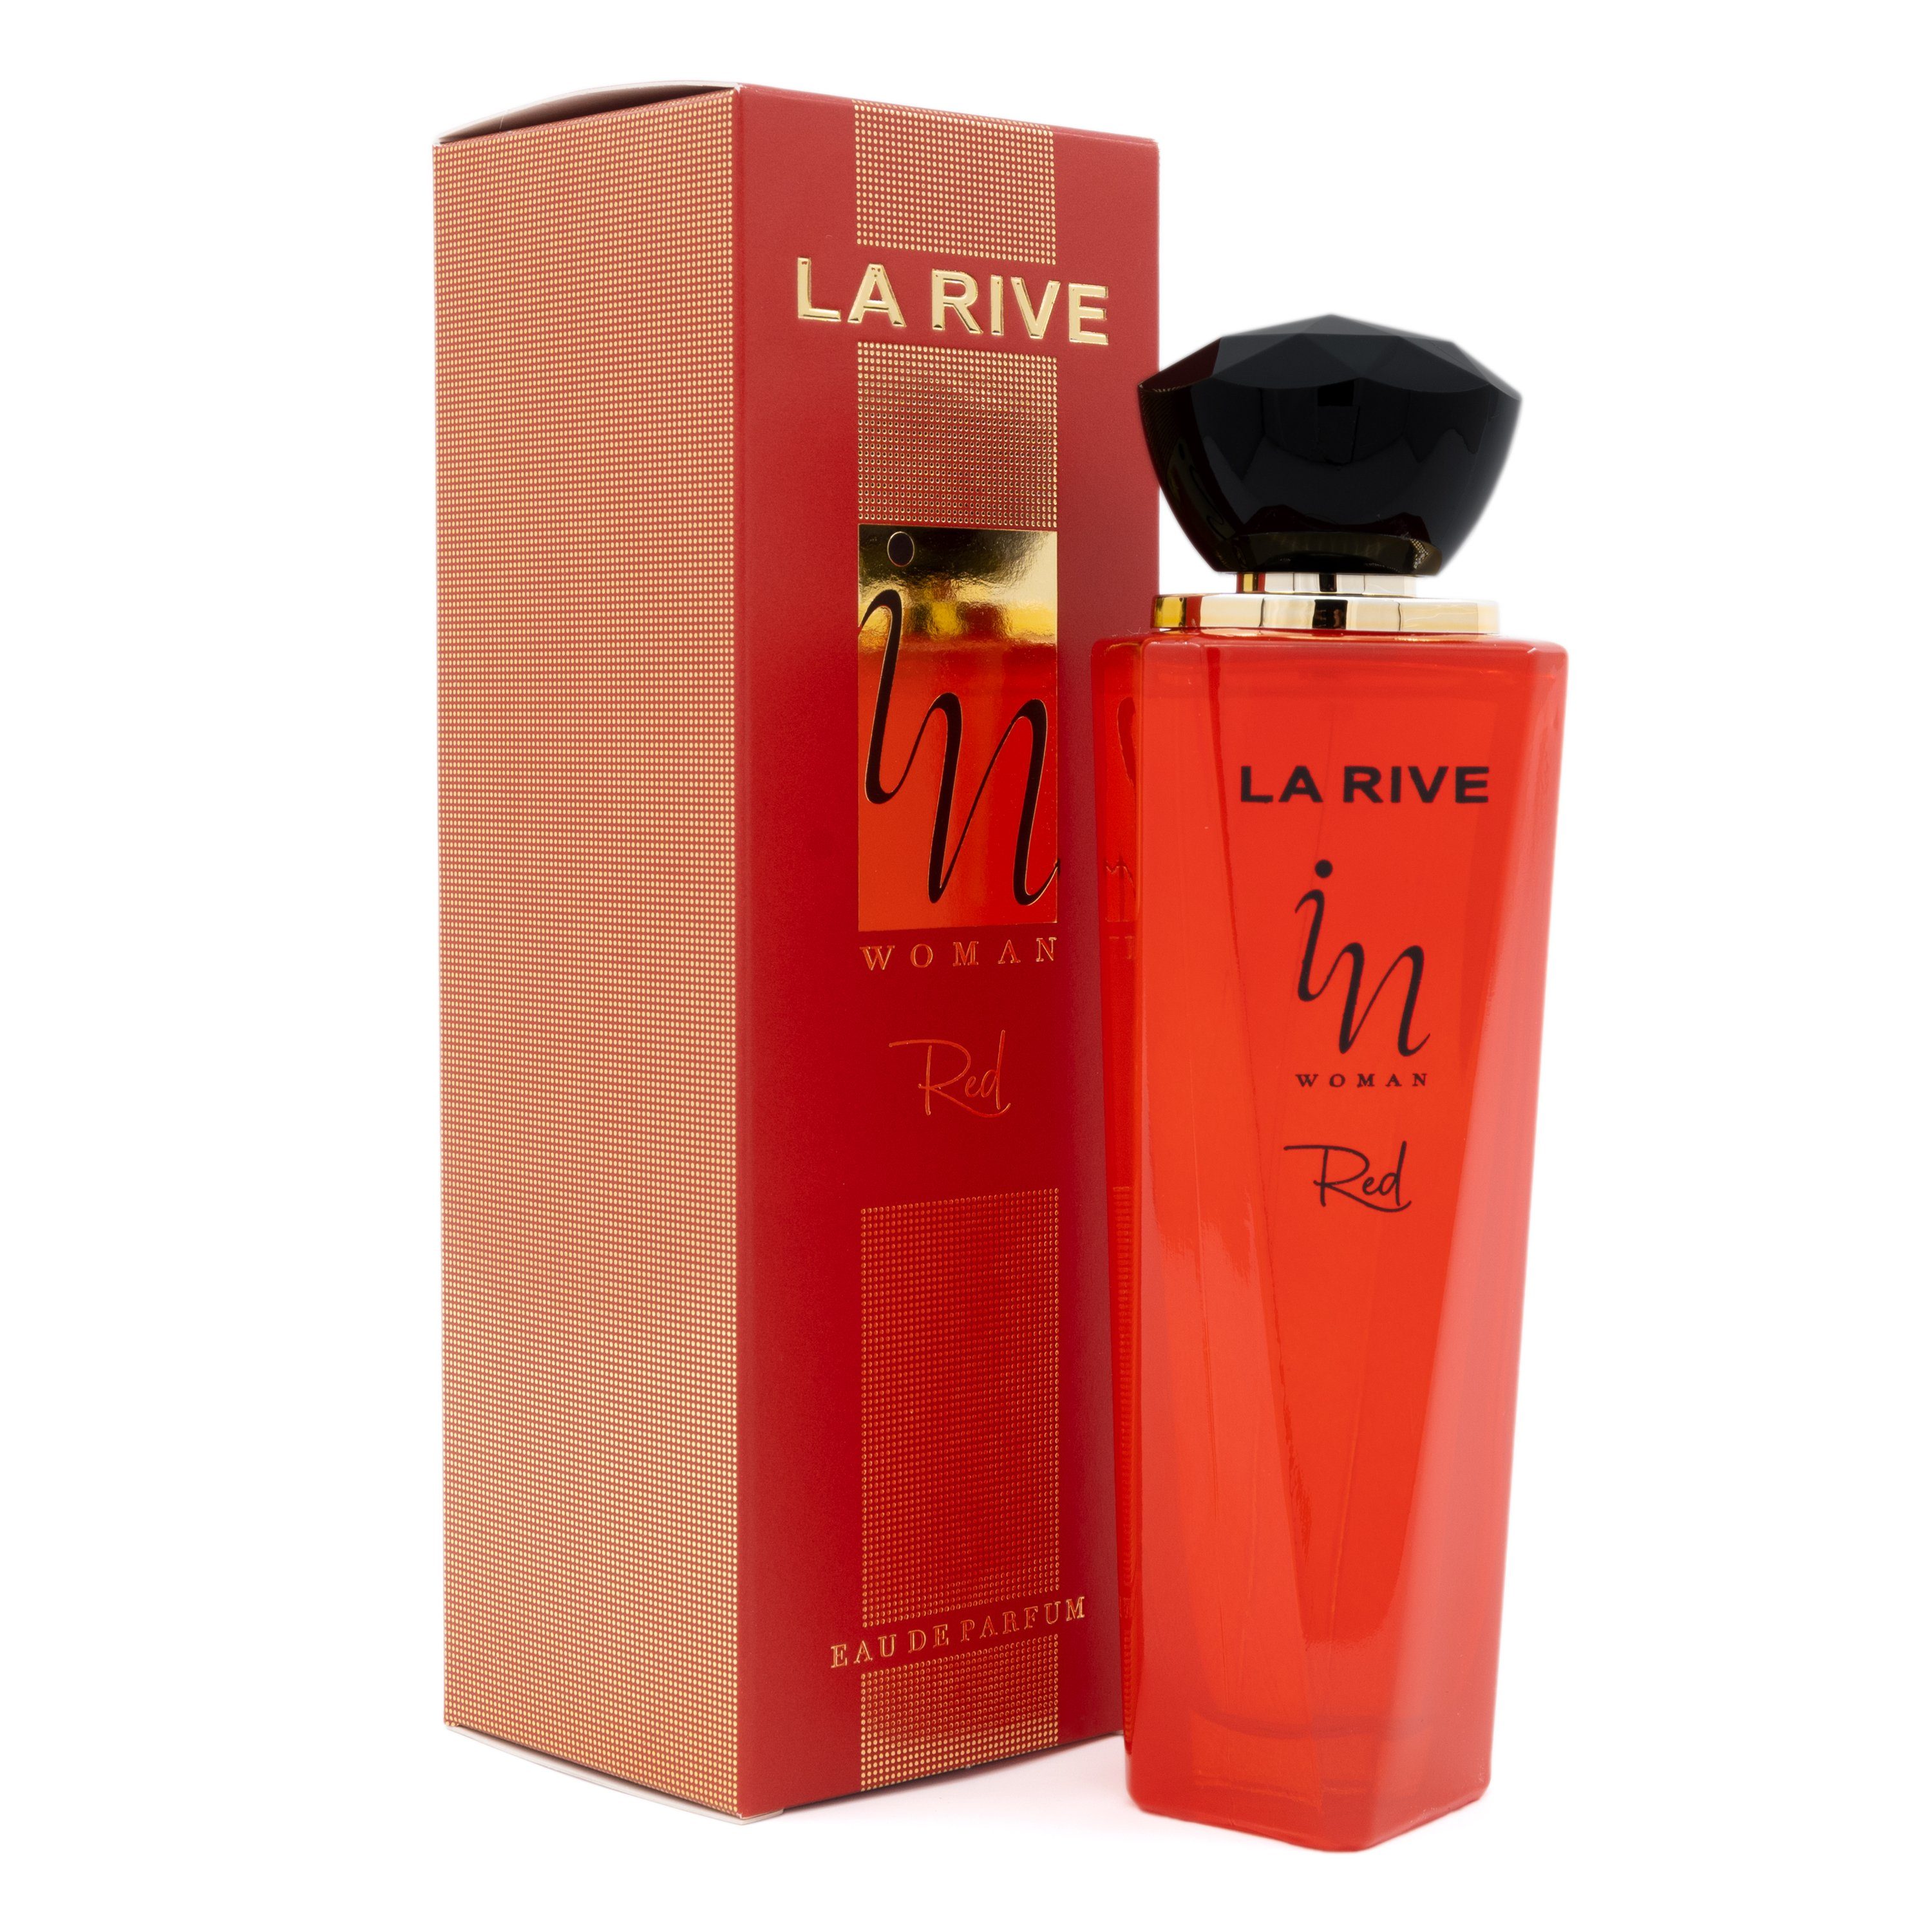 La Rive Eau de Eau RIVE - Parfum de In ml - Red 100 LA Parfum Woman